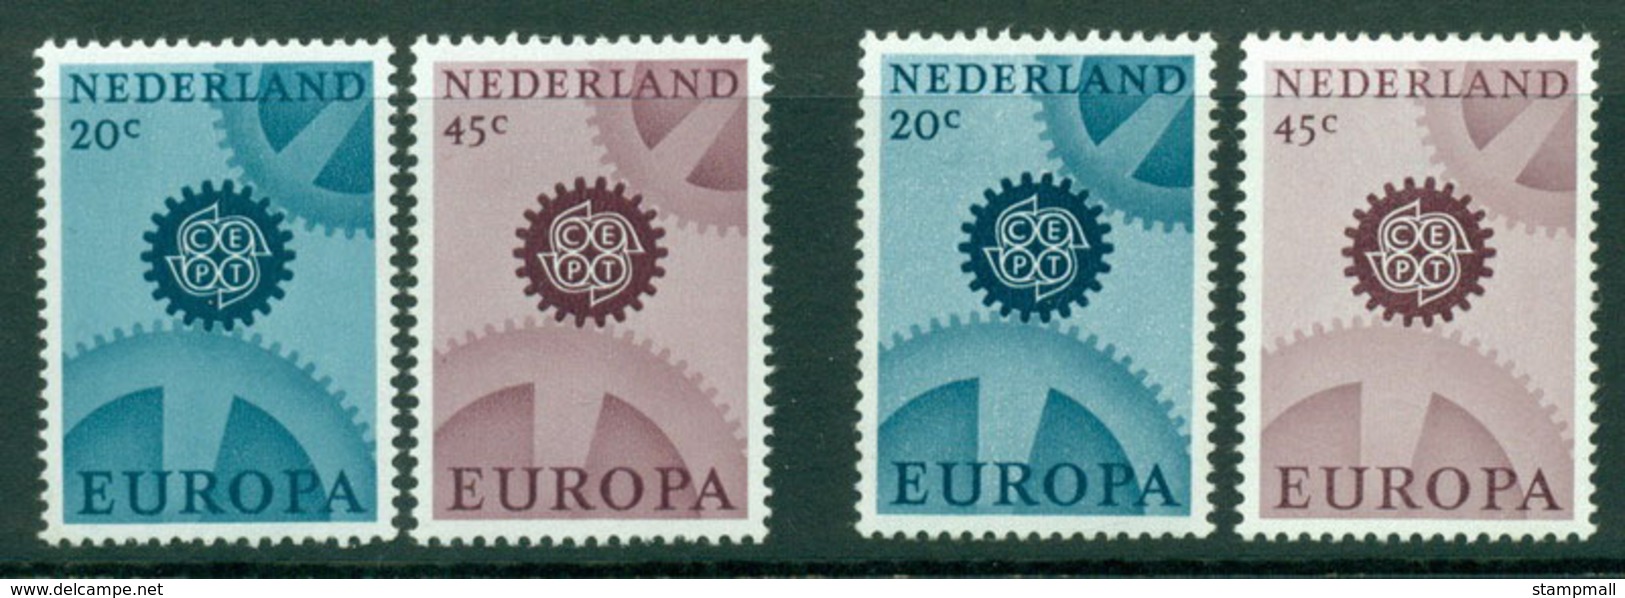 Netherlands 1967 Europa Wmk & No Wmk MUH Lot15577 - Unclassified